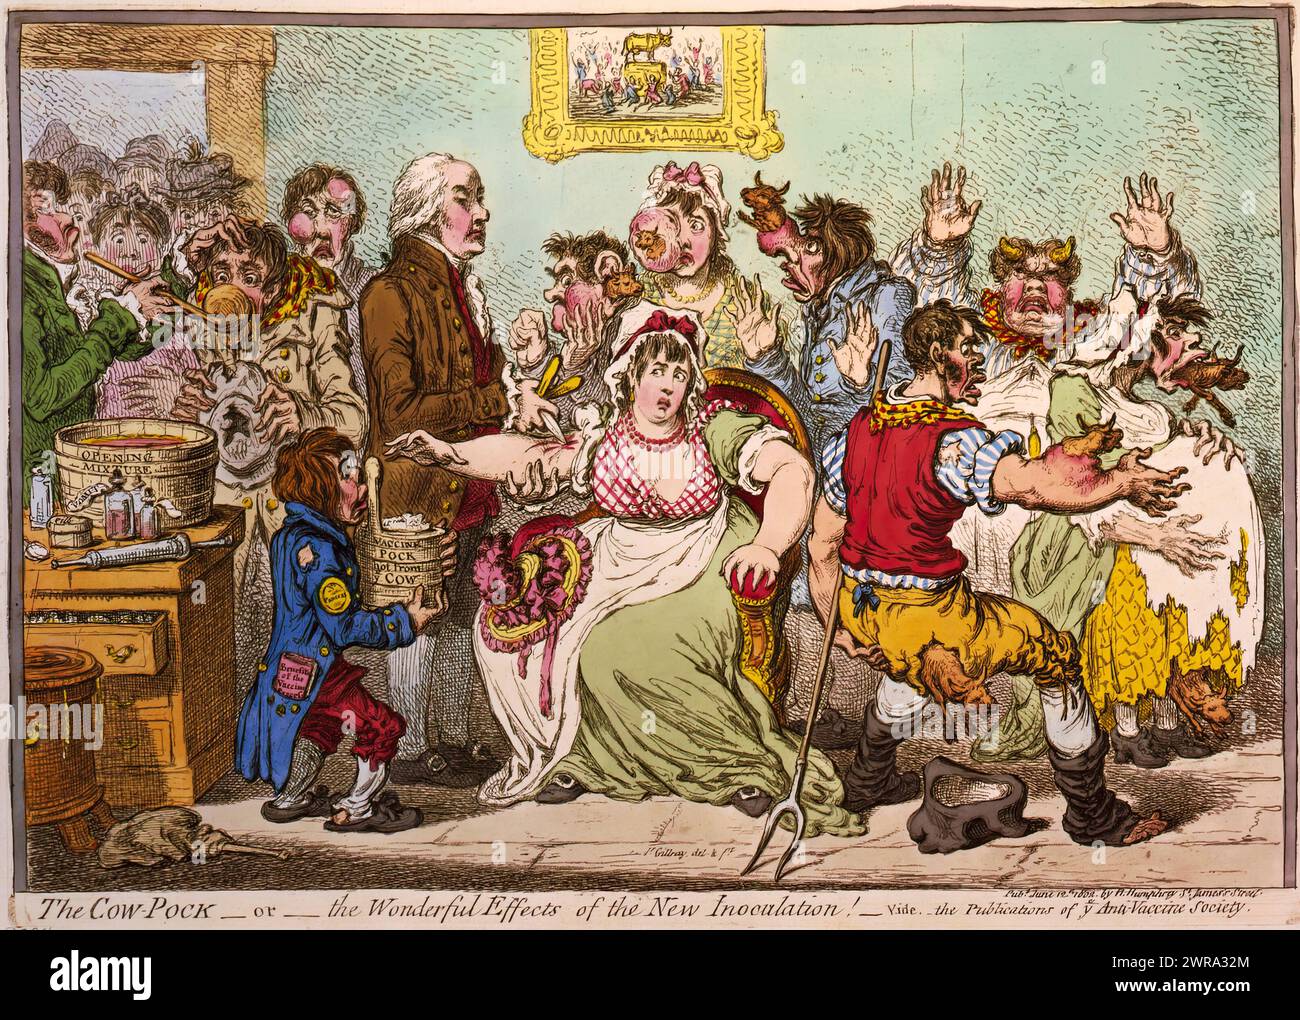 Das Kuhpferd – oder – die wunderbaren Effekte der Neuen Impfung! – Vide. Die Publikationen von YE Anti-Vaccine Society. James Gillray.1802. Stockfoto